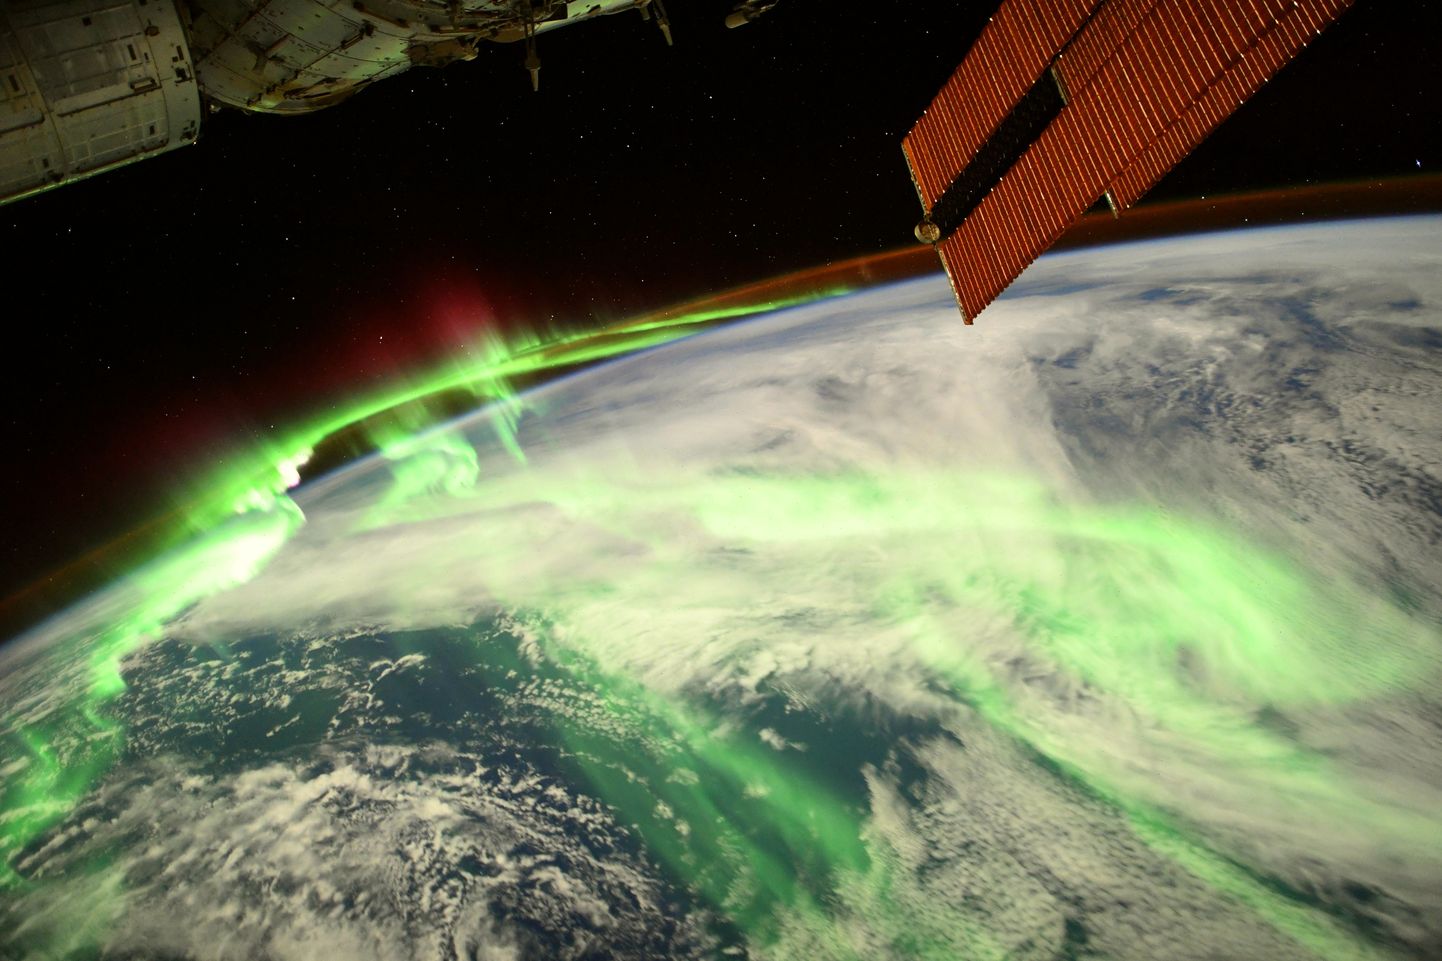 Ziemeļblāzma no Starptautiskās kosmosa stacijas